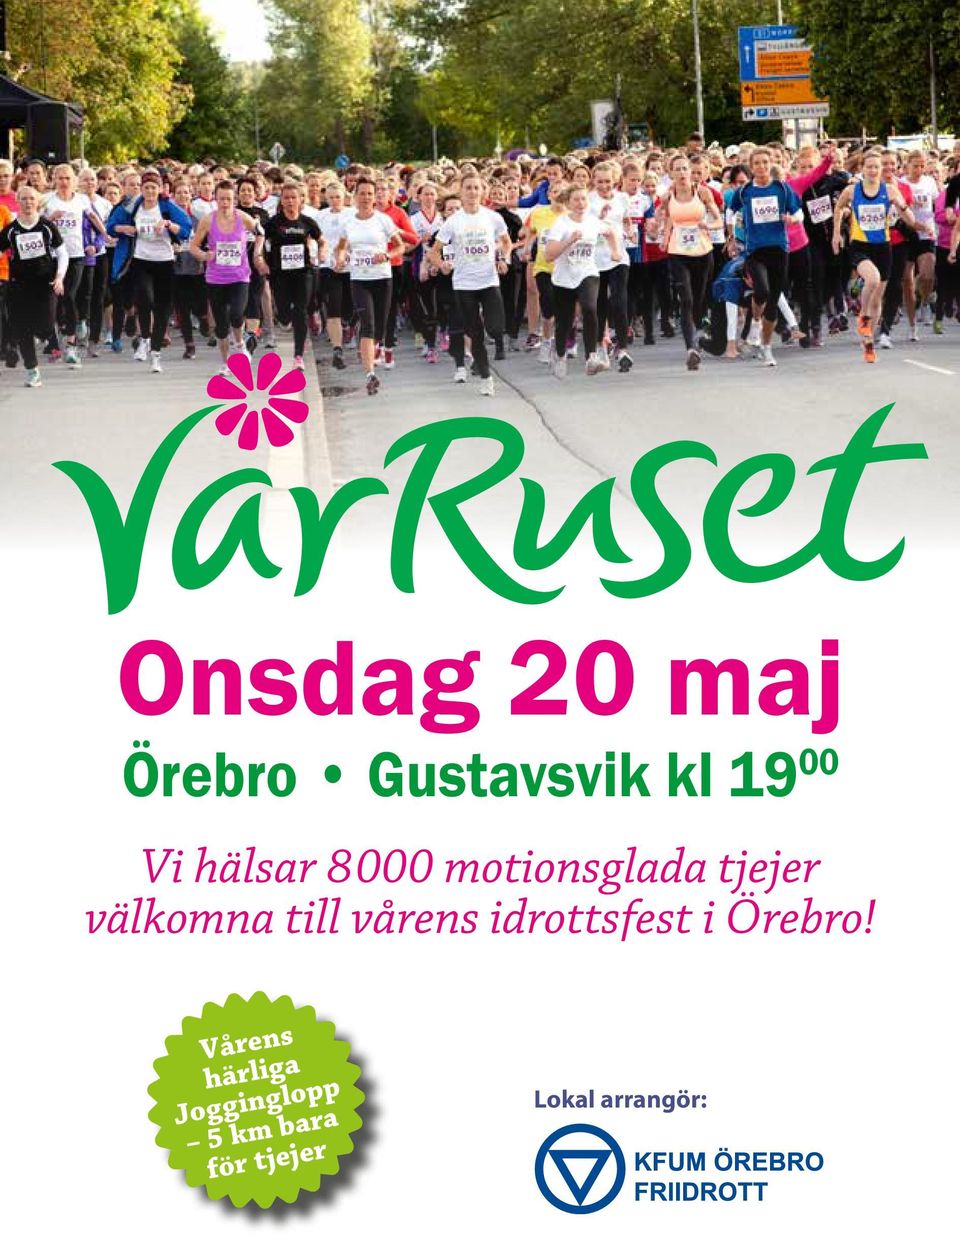 till vårens idrottsfest i Örebro!